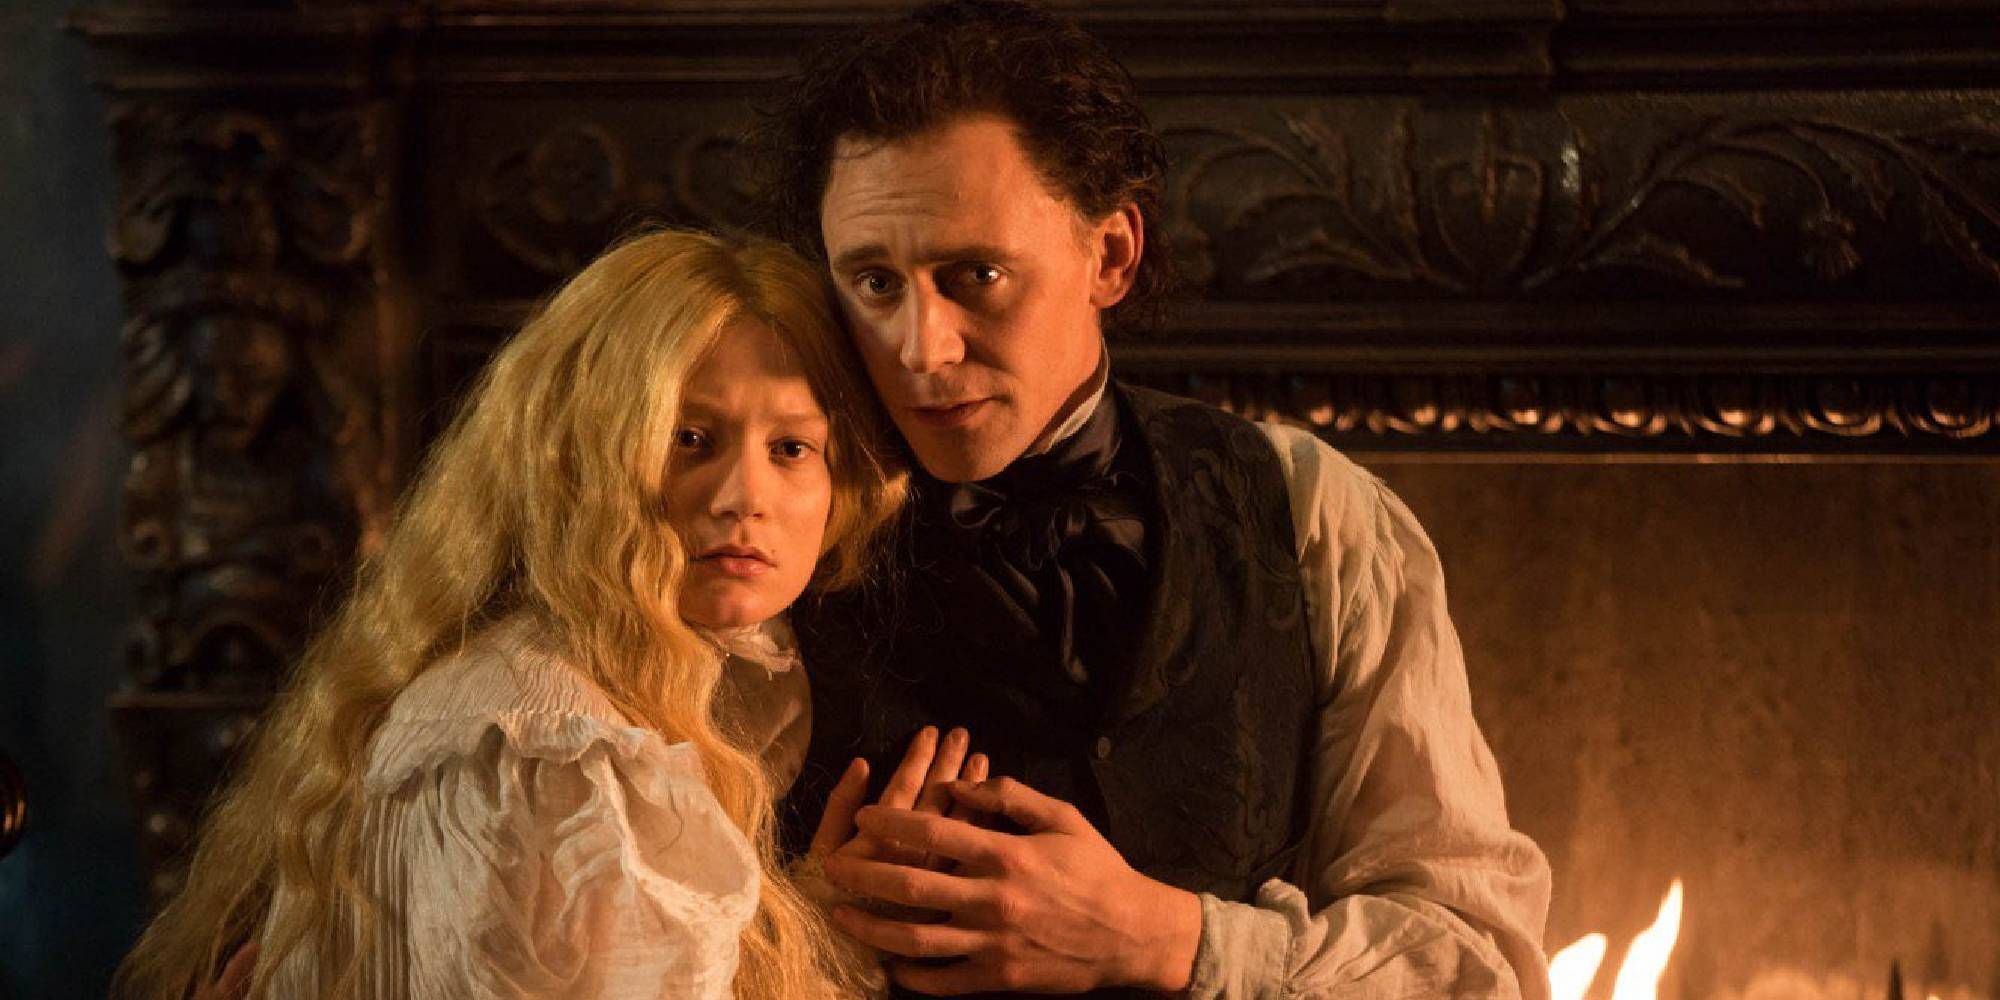 Mia Wasikowska as Edith looks worried while holding onto Tom Hiddleston as Thomas in Crimson Peak.